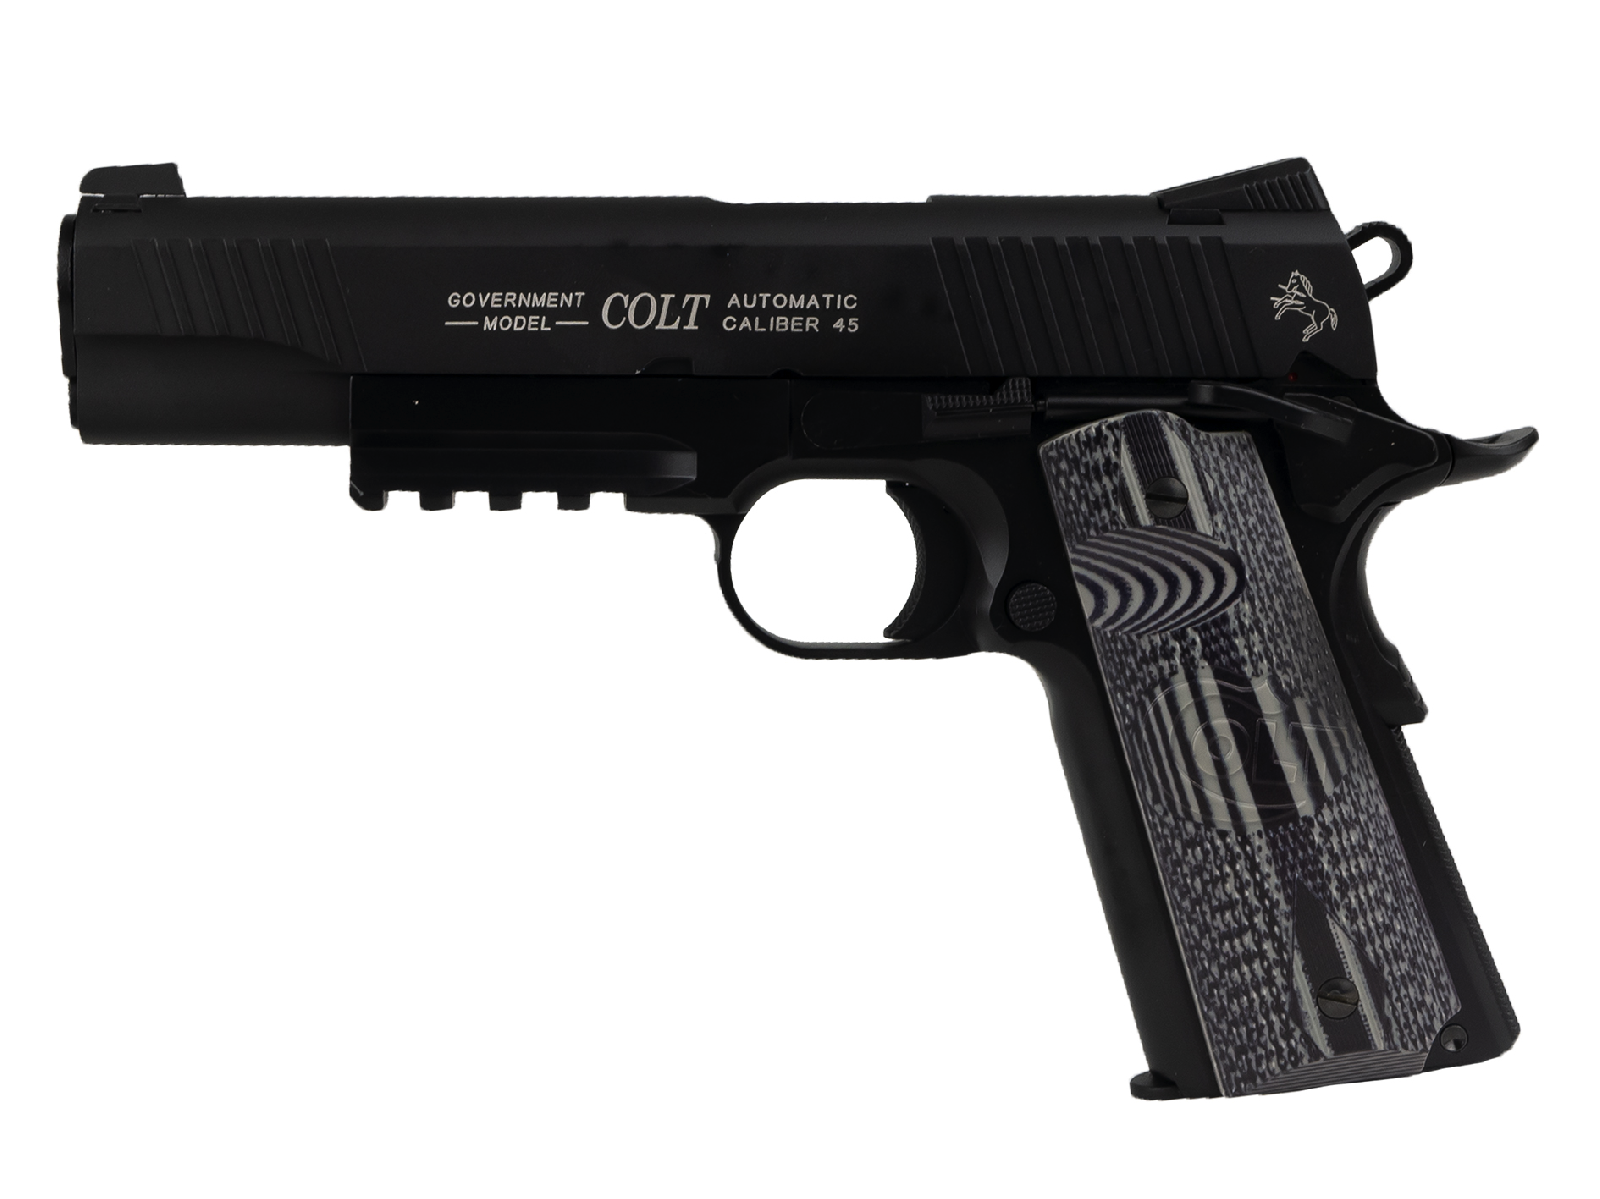 Colt Combat Unit 6mm 1 J Max /C6